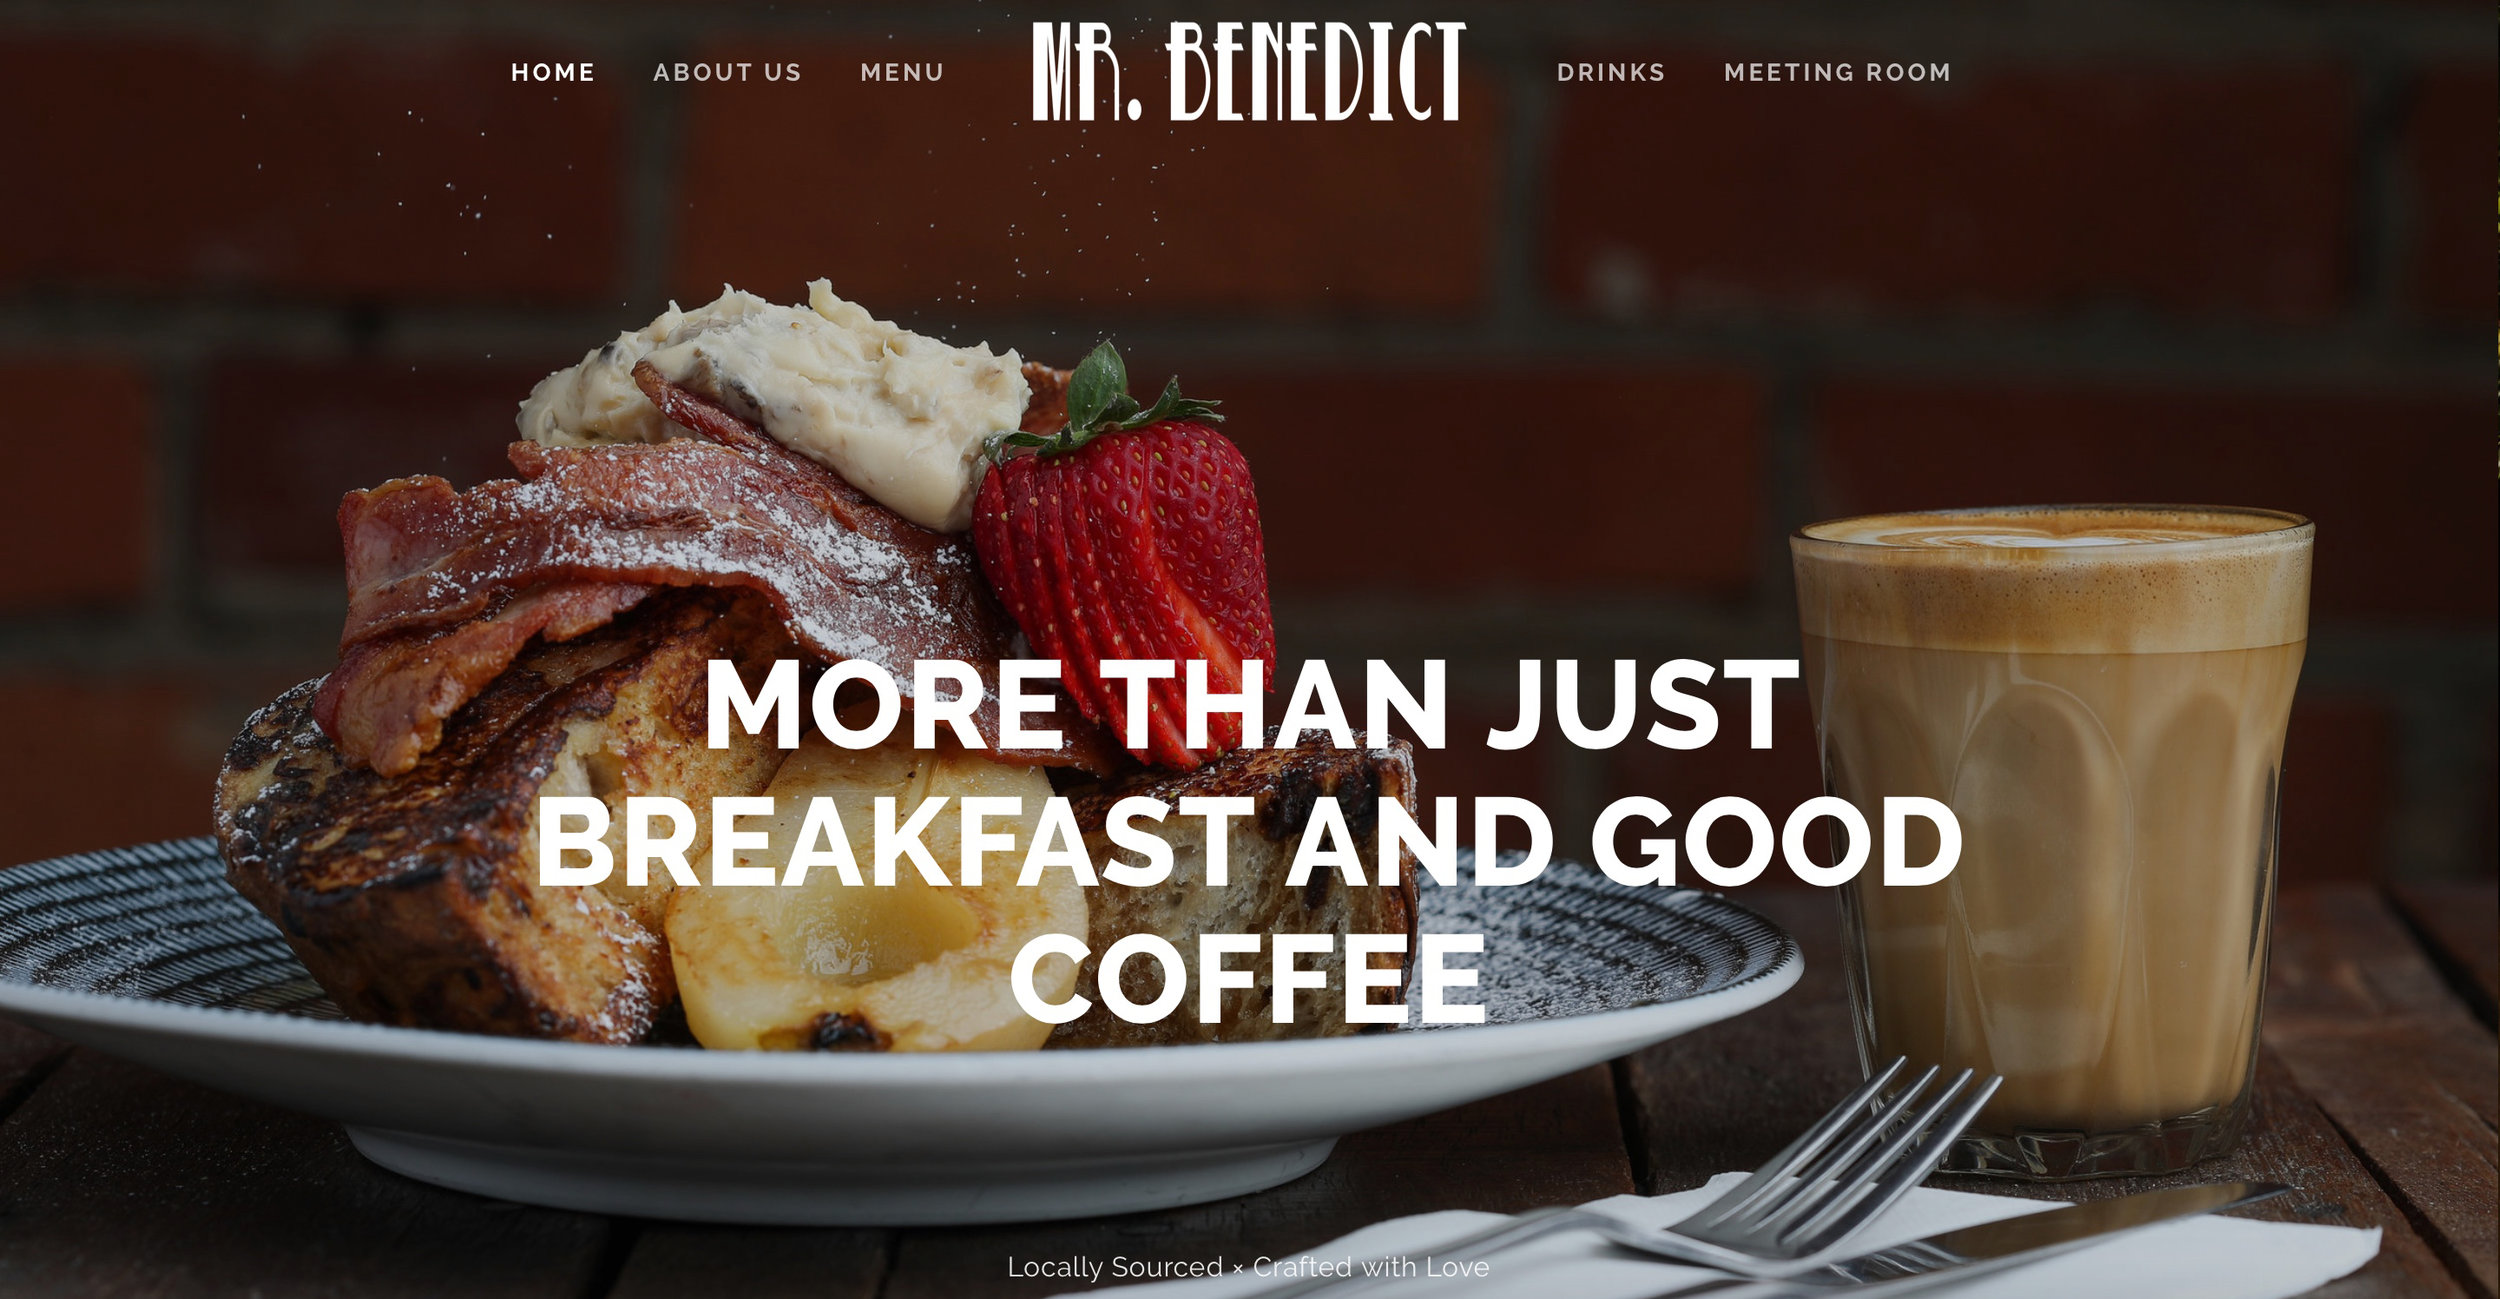 Mr Benedict - Cafe